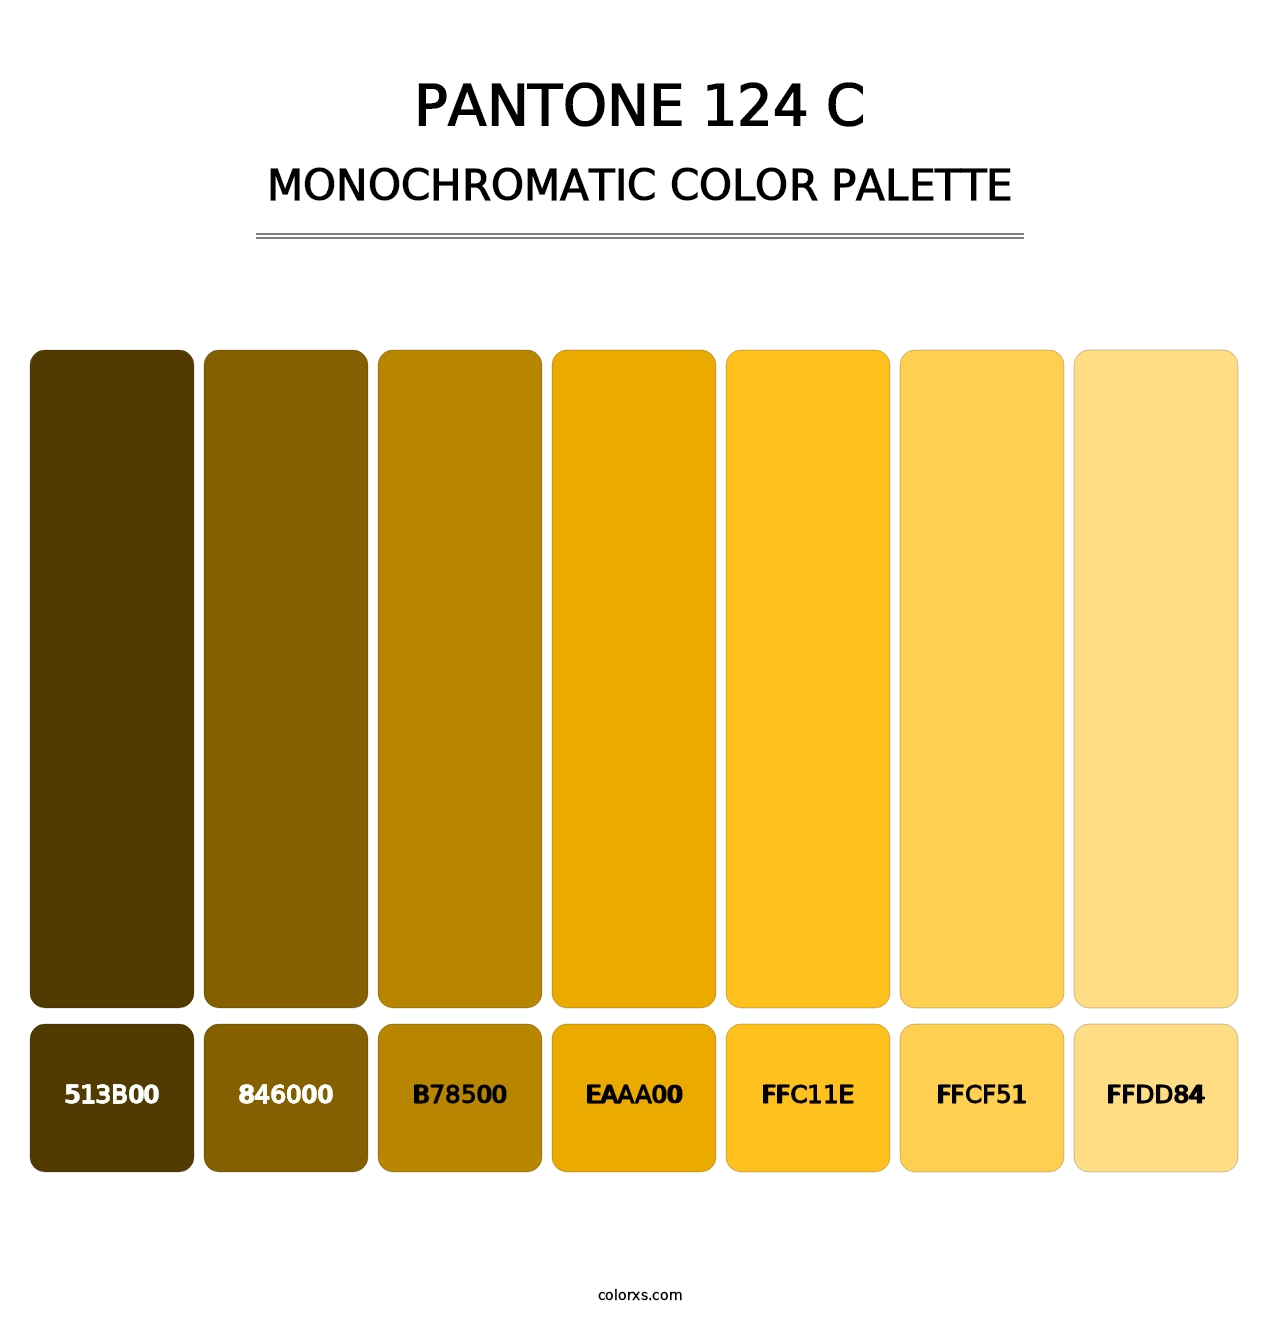 PANTONE 124 C - Monochromatic Color Palette